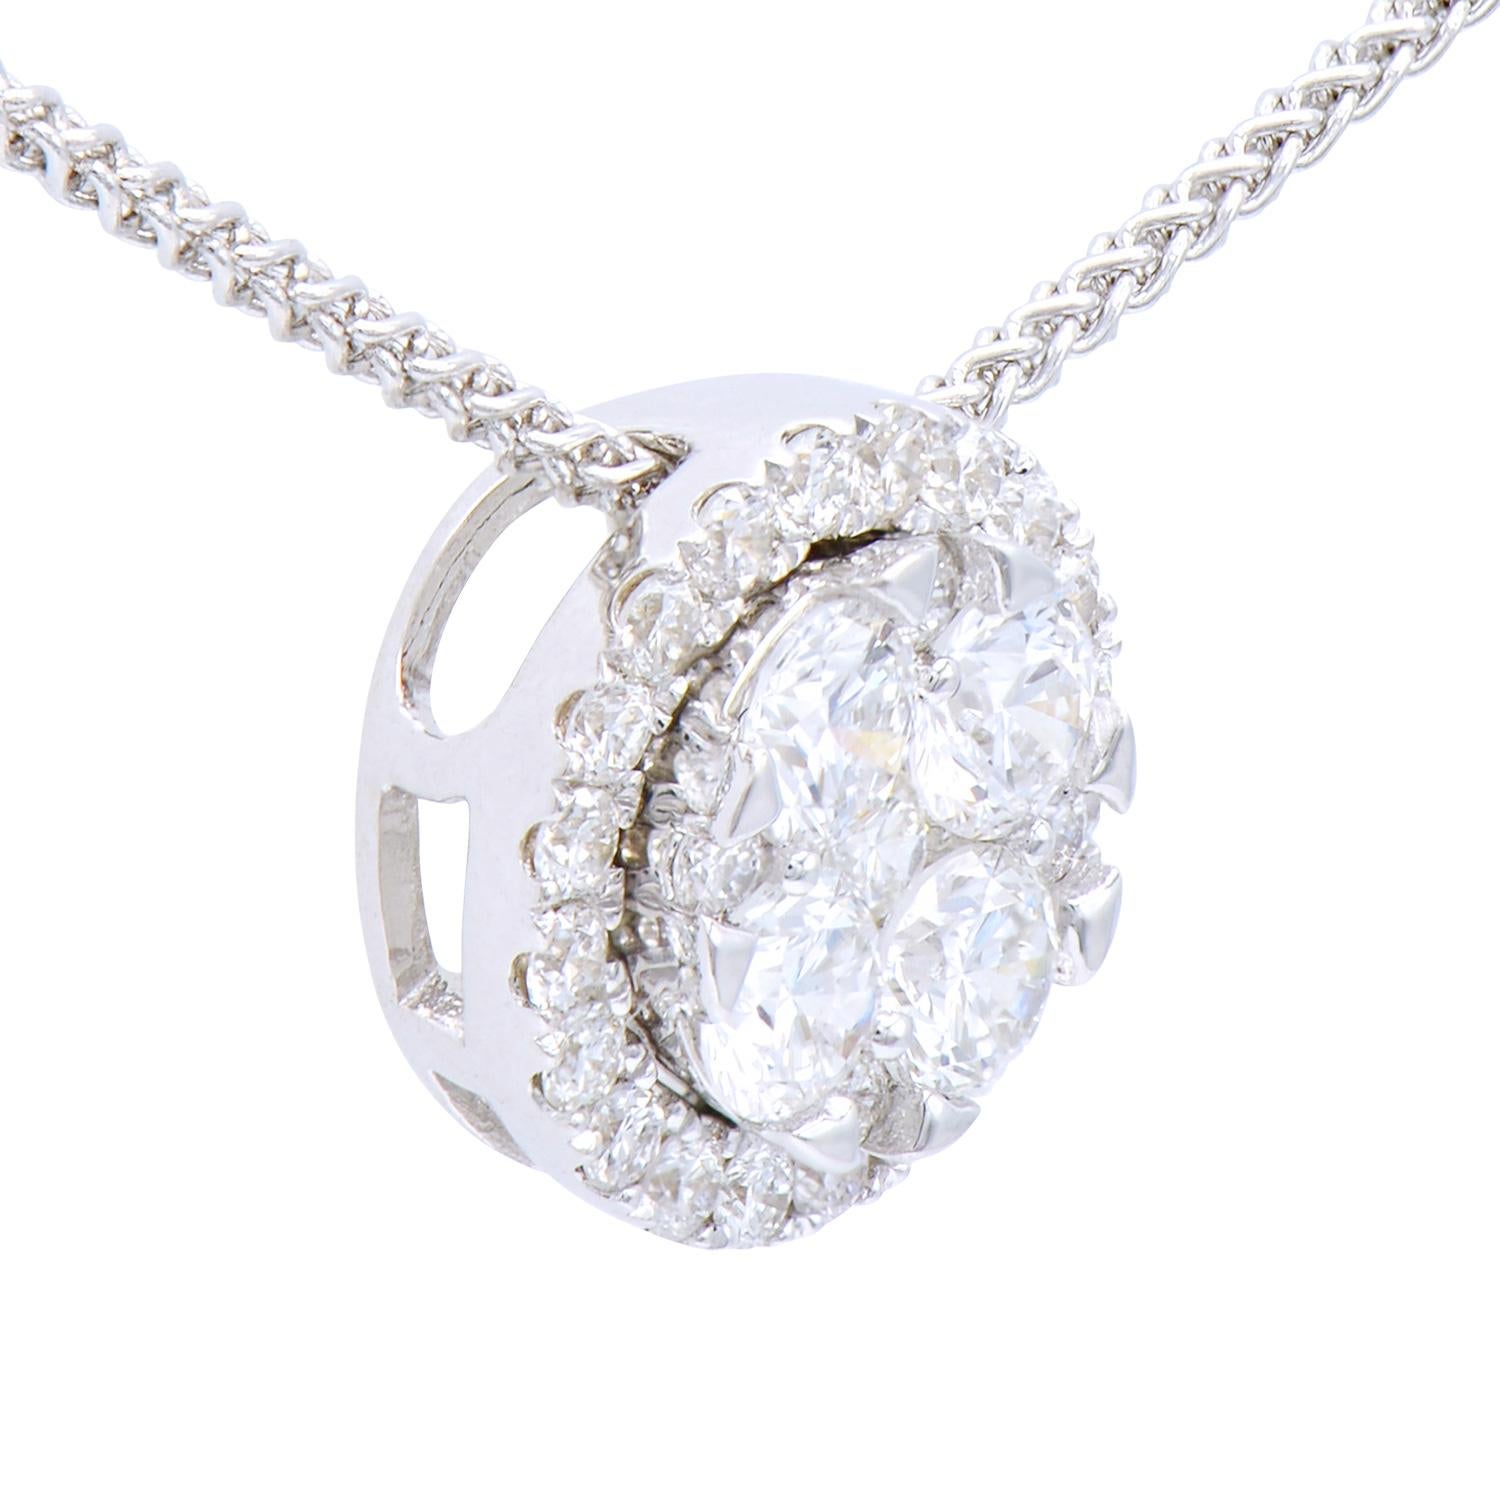 Ce magnifique pendentif en forme de cercle est composé de 4 diamants de 0,35 carat entourés de 25 diamants ronds de 0,2 carat, tous de couleur VS2, G. Elles sont serties dans 1,0 gramme d'or blanc 18 carats avec une chaîne également 18 carats. Ce